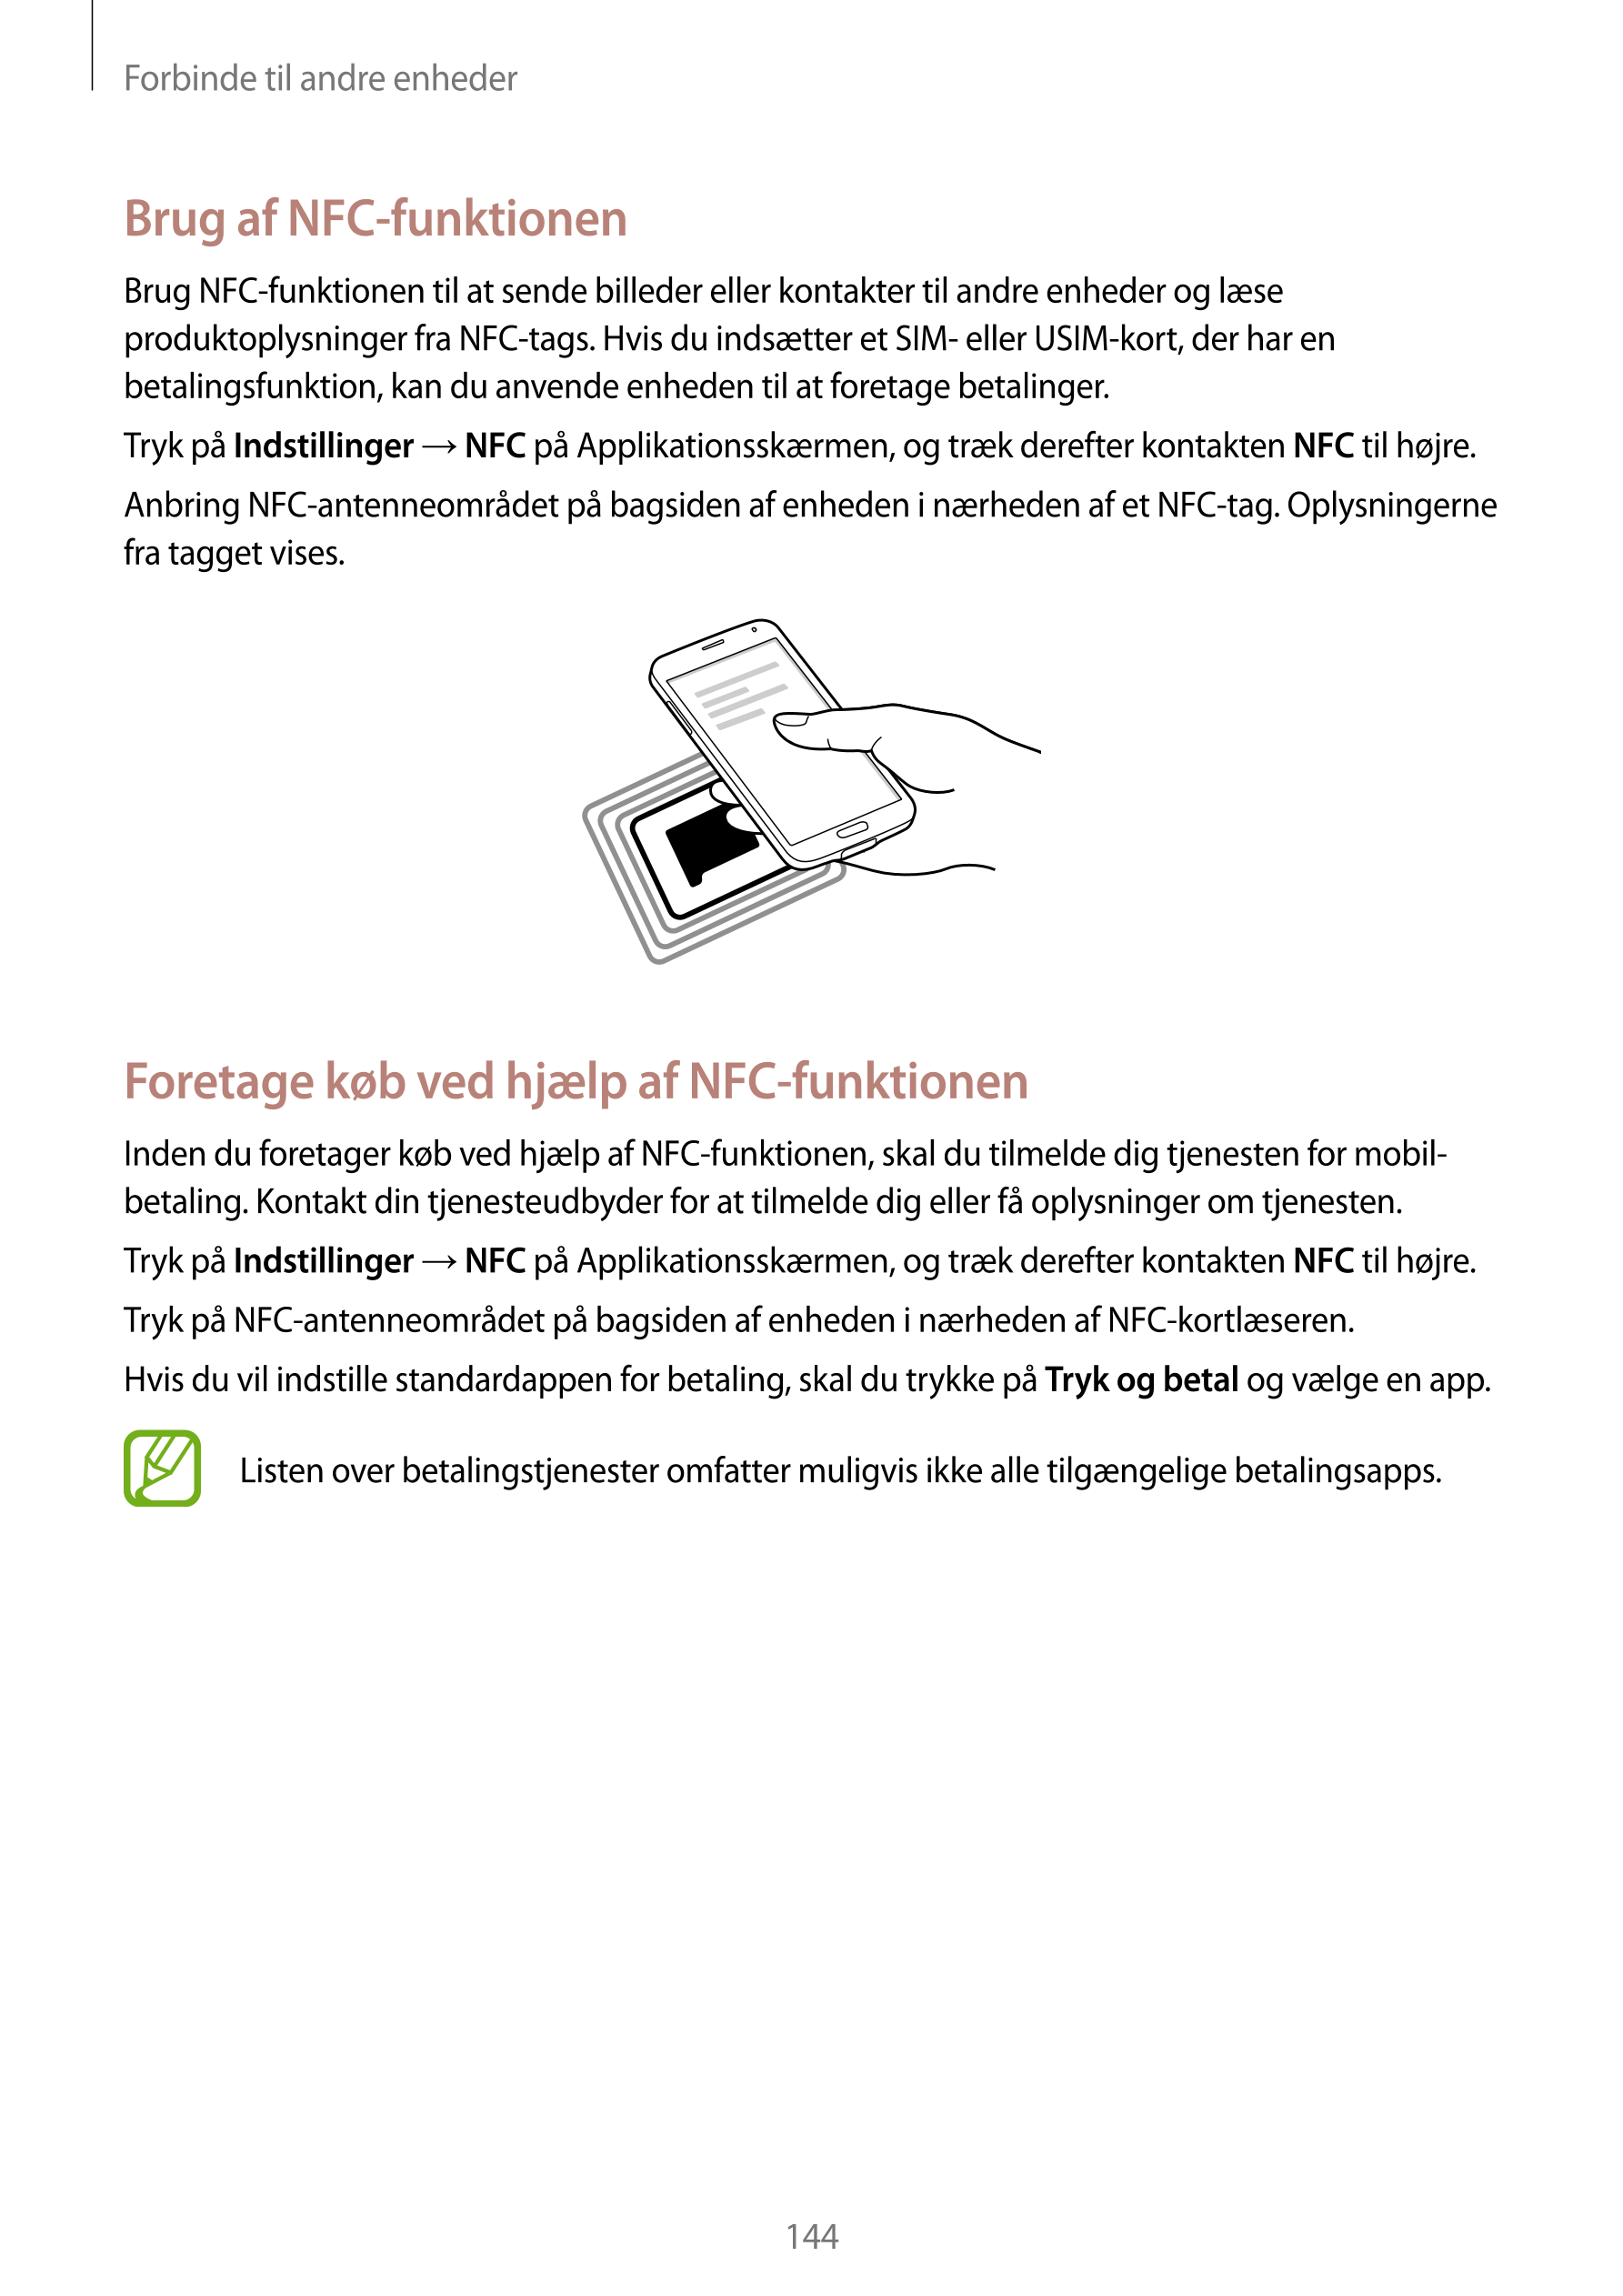 Forbinde til andre enheder
Brug af NFC-funktionen
Brug NFC-funktionen til at sende billeder eller kontakter til andre enheder og